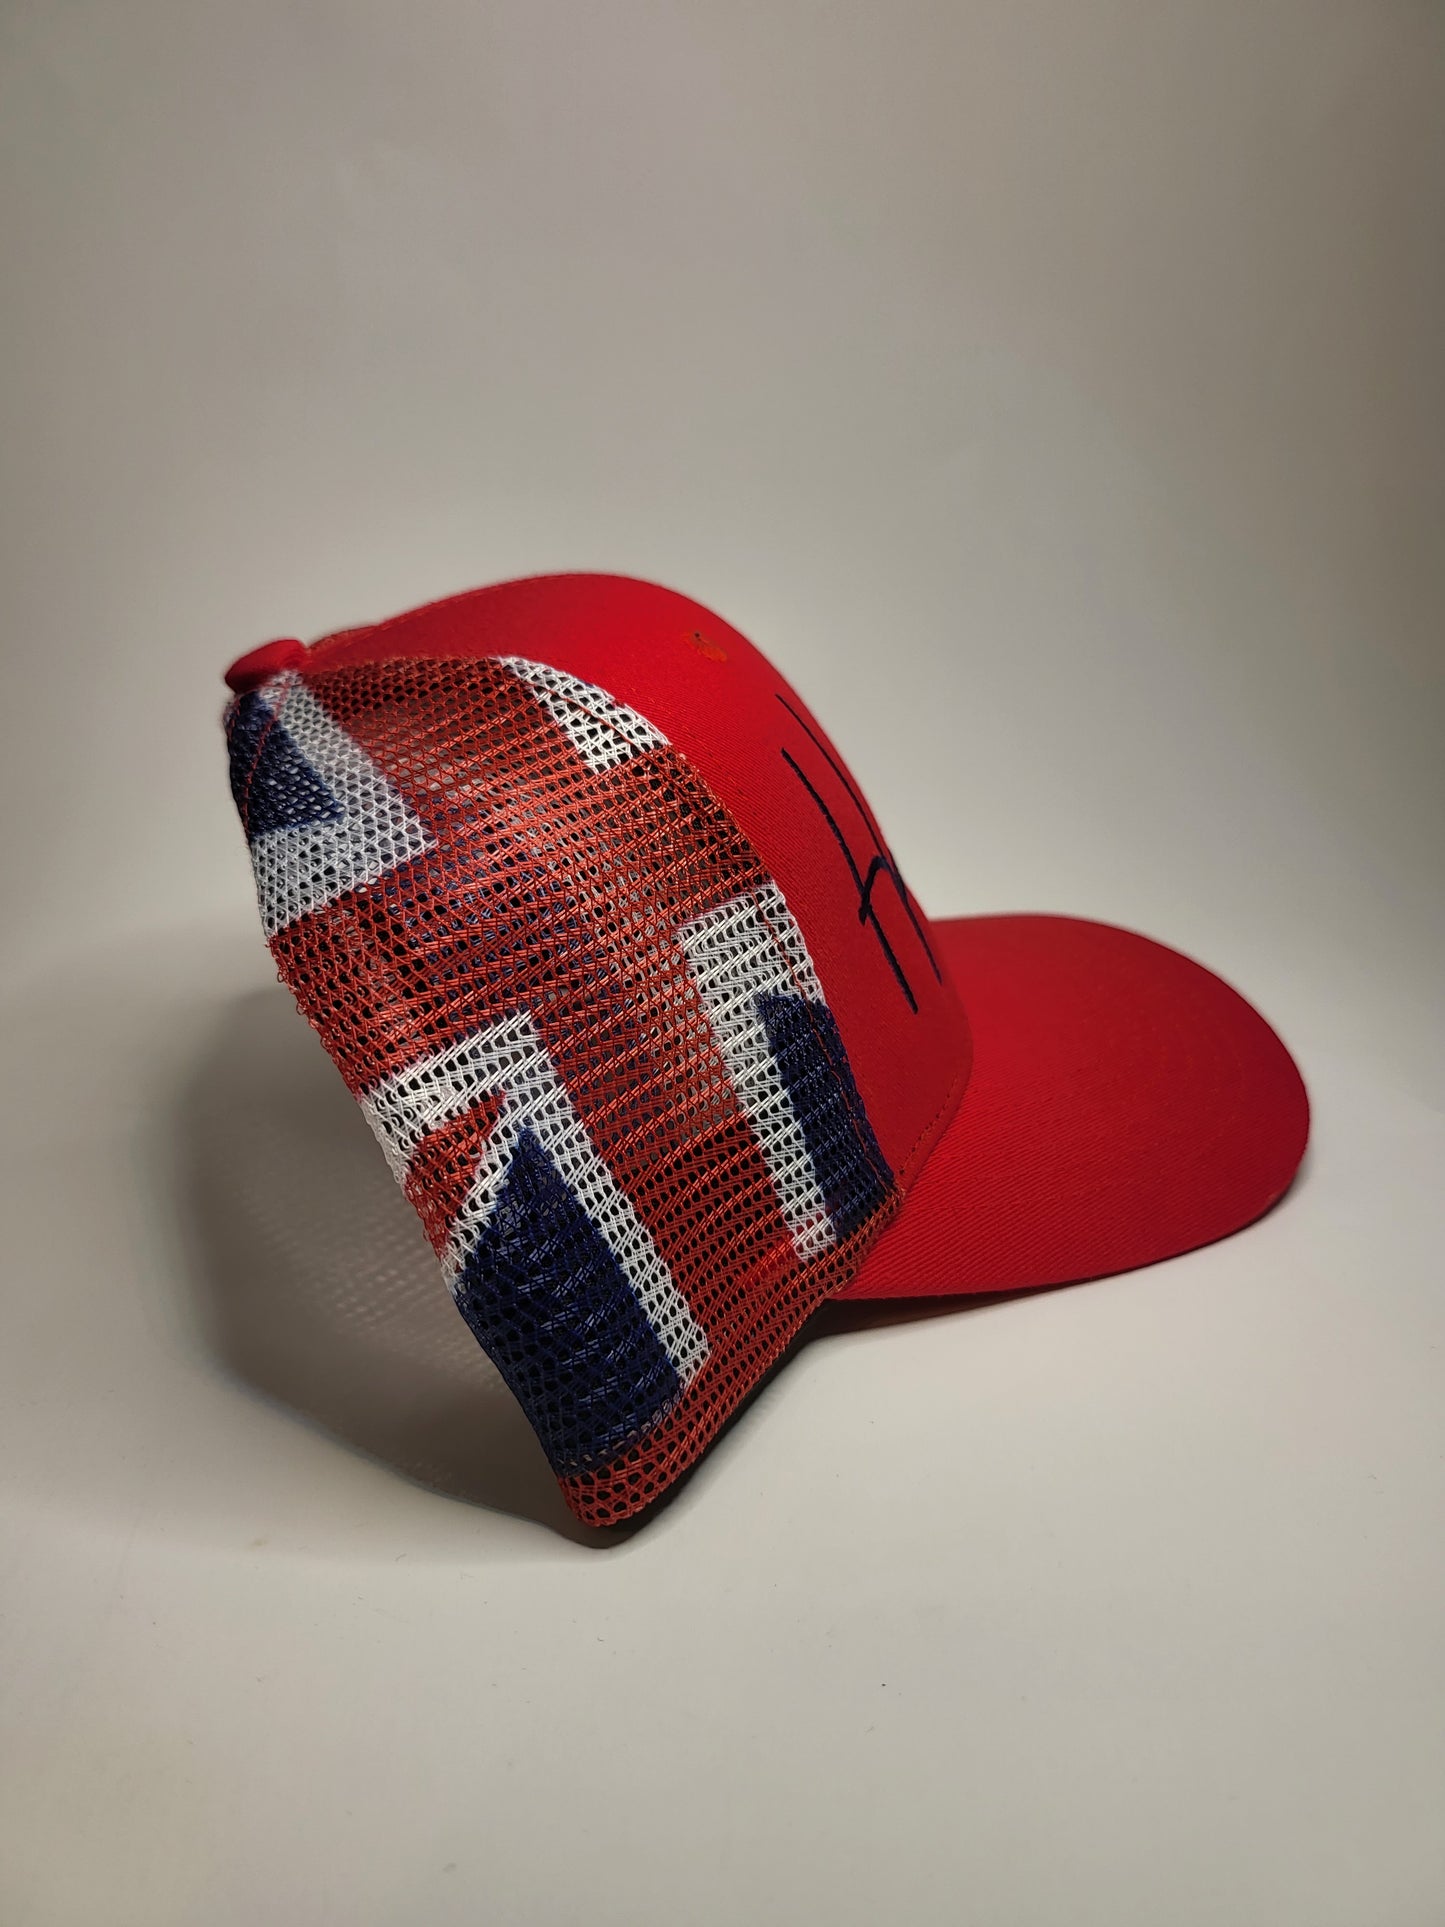 Hats "Hawaiian Flag Mesh" (Red) Trucker Cap